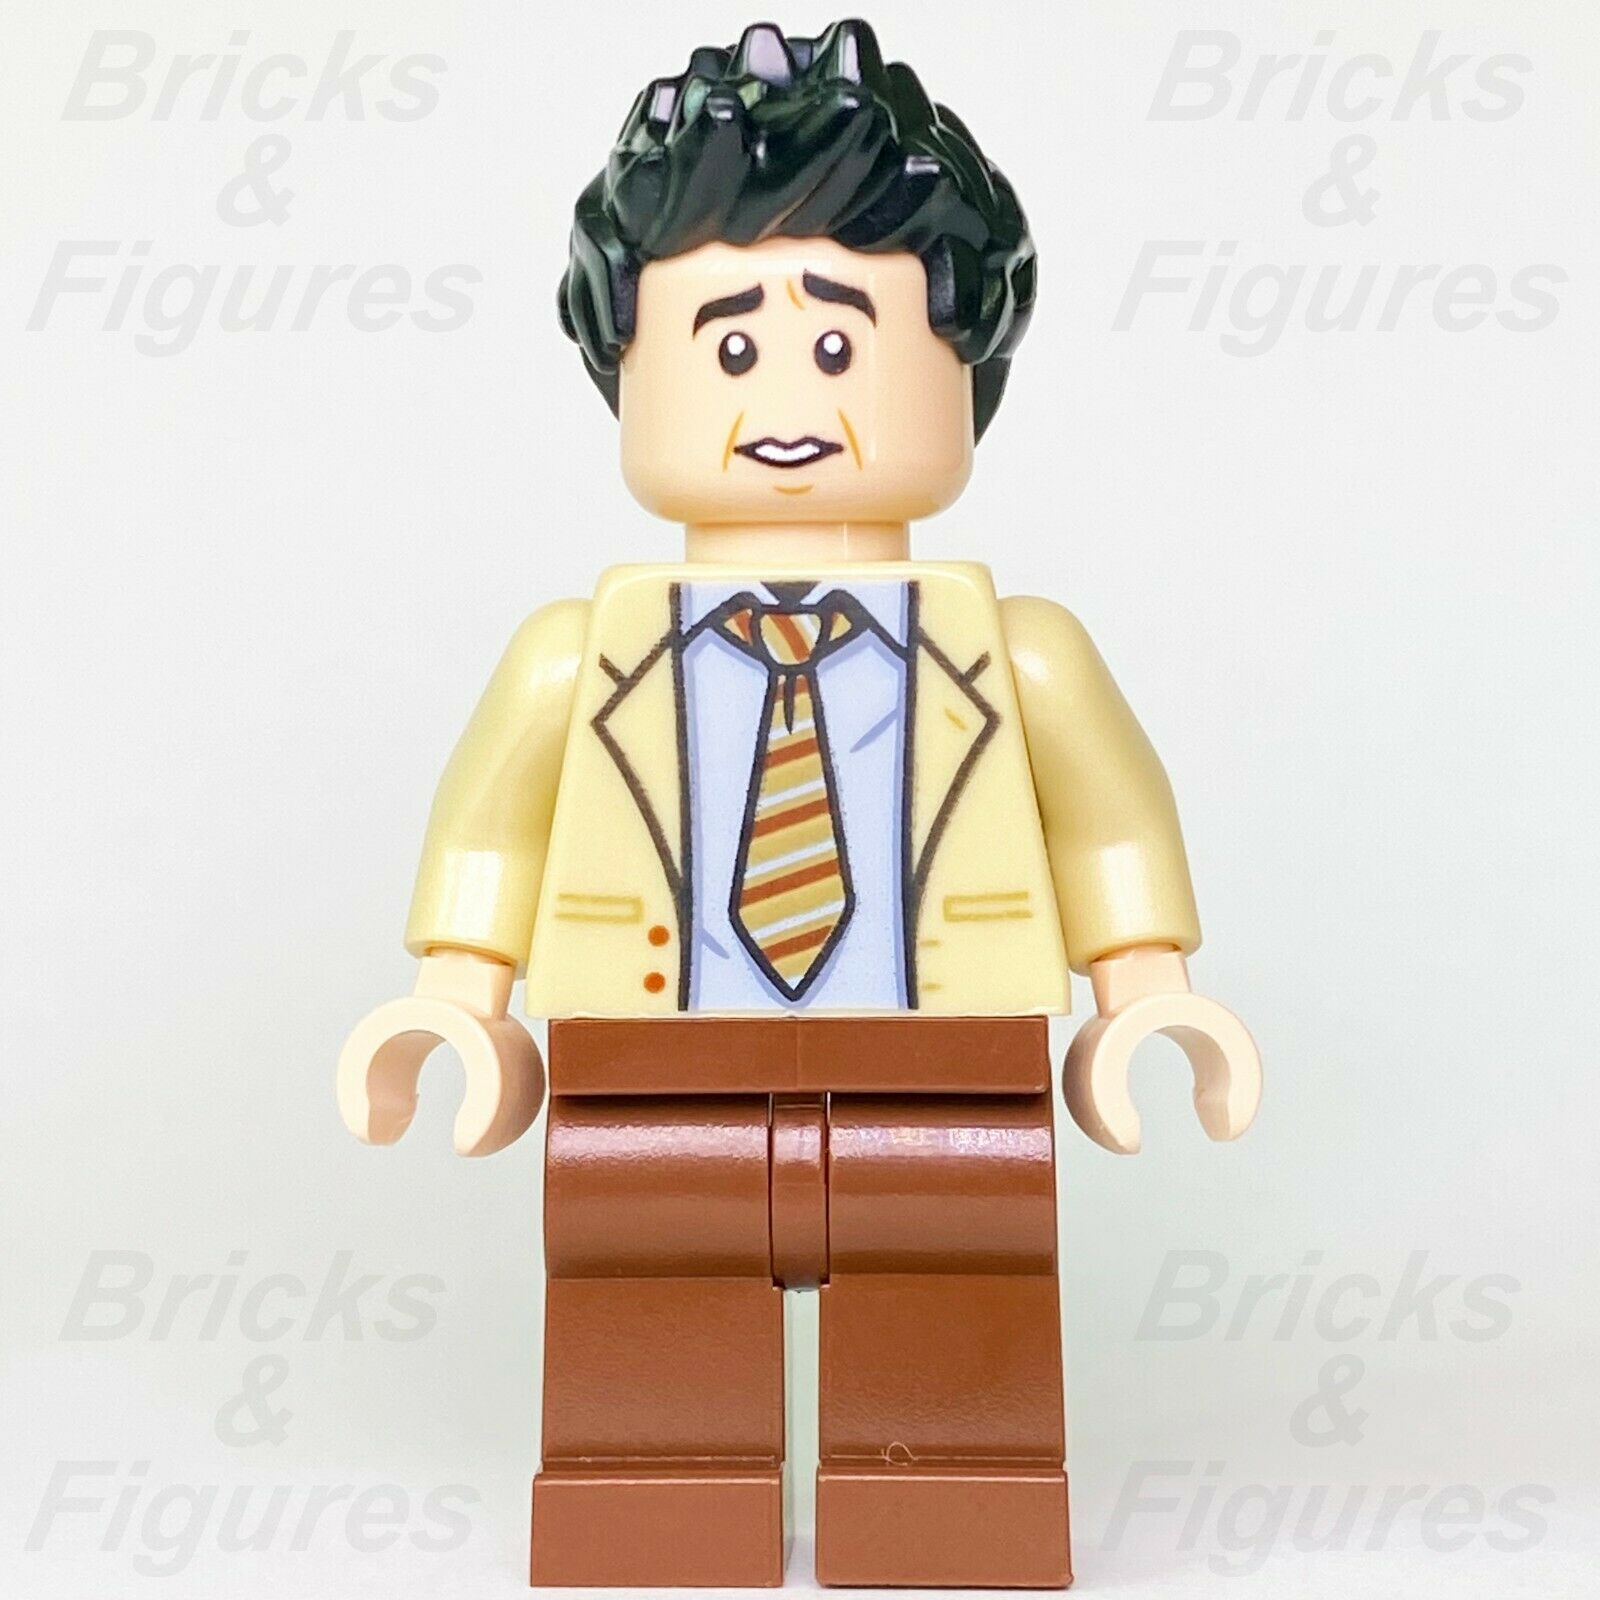 Ideas LEGO Ross Geller F·R·I·E·N·D·S (Friends) TV Show Minifigure 21319 - Bricks & Figures